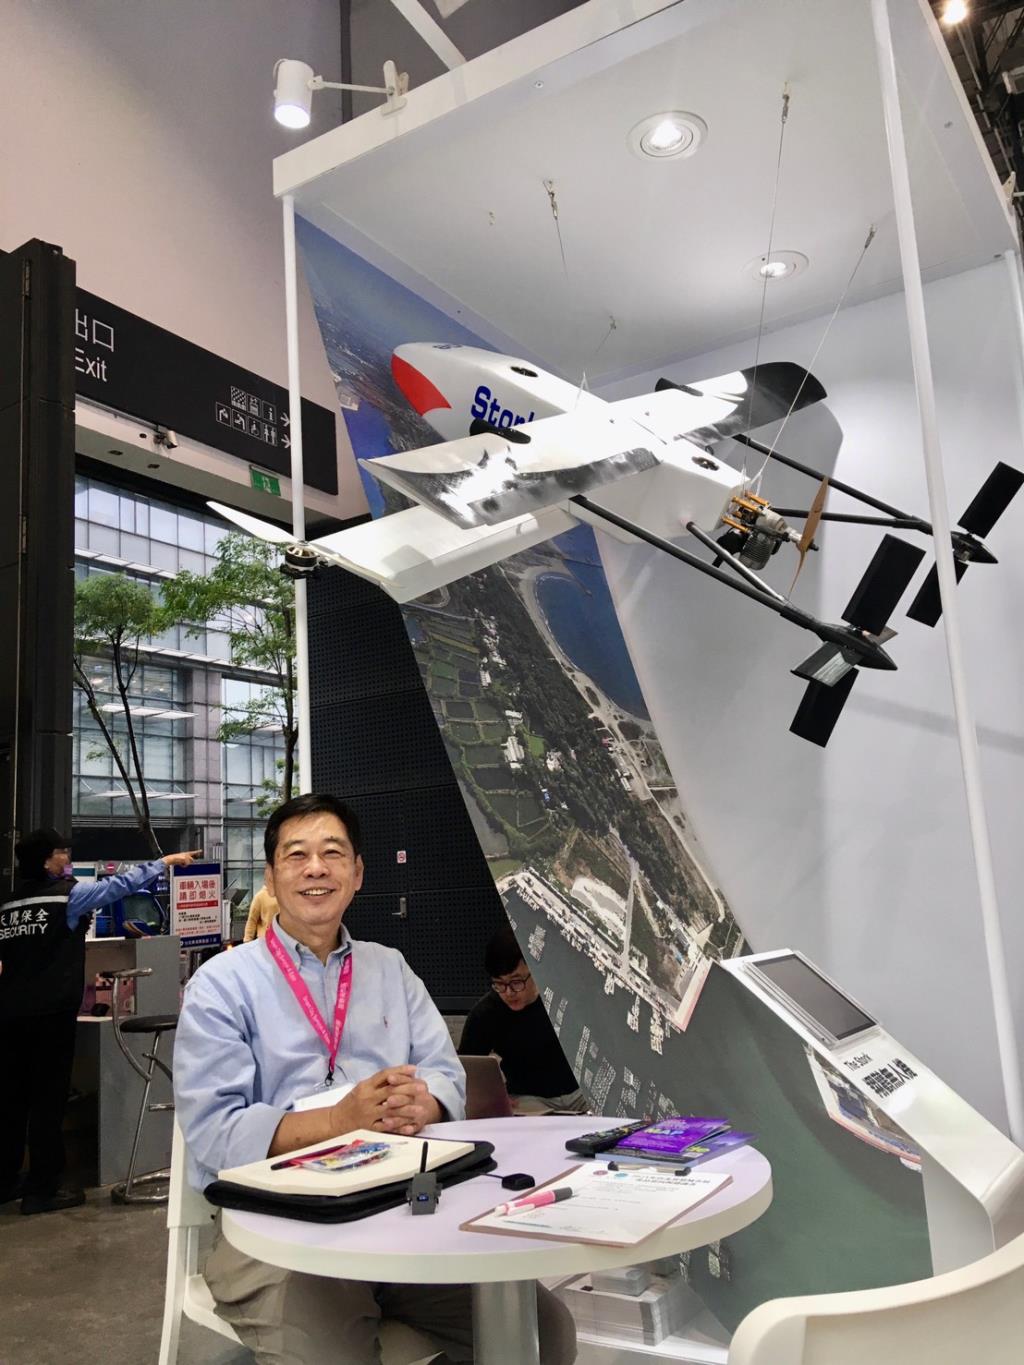 2021年台北智慧城市展 長榮大學無人機中心推出三款新型無人機與無人機飛航管理系統(UTM) 重新定義無人機的未來